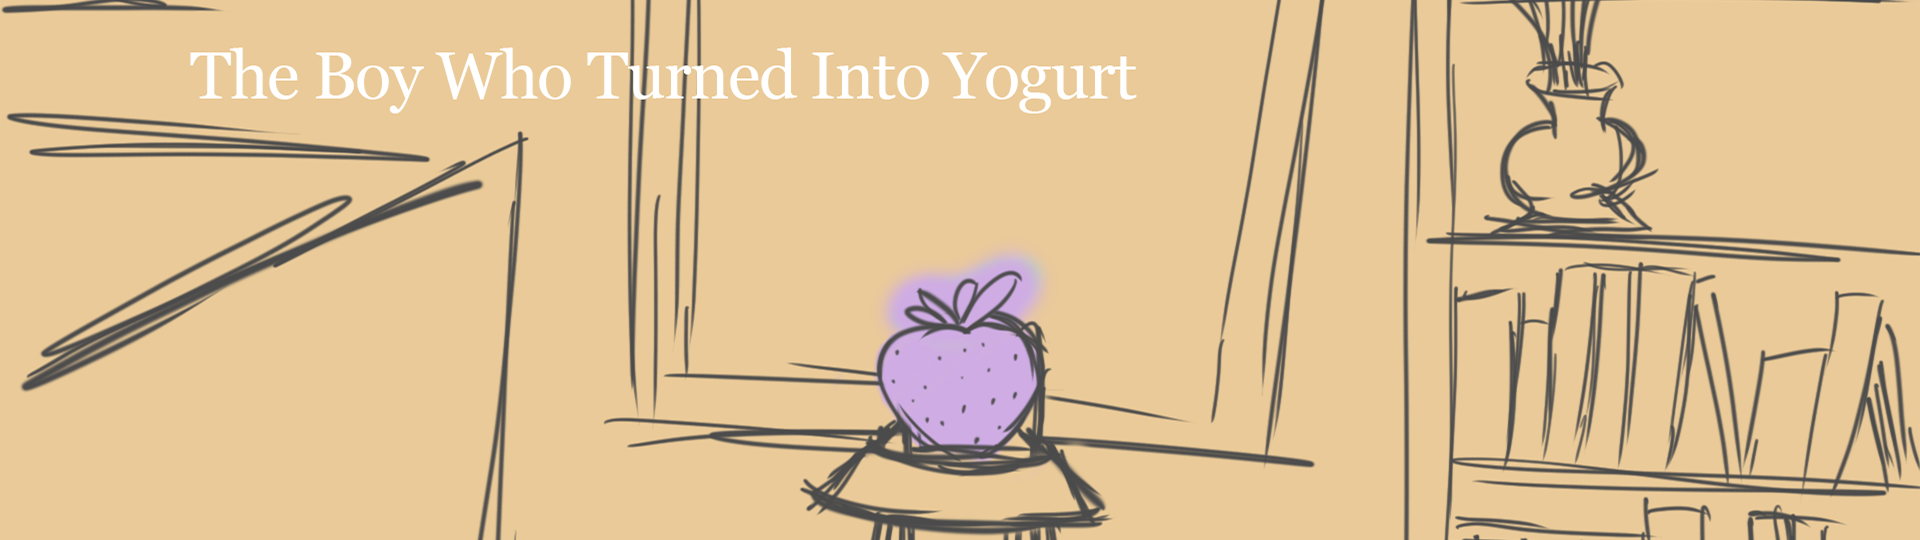 The Boy Who Turned Into Yogurt